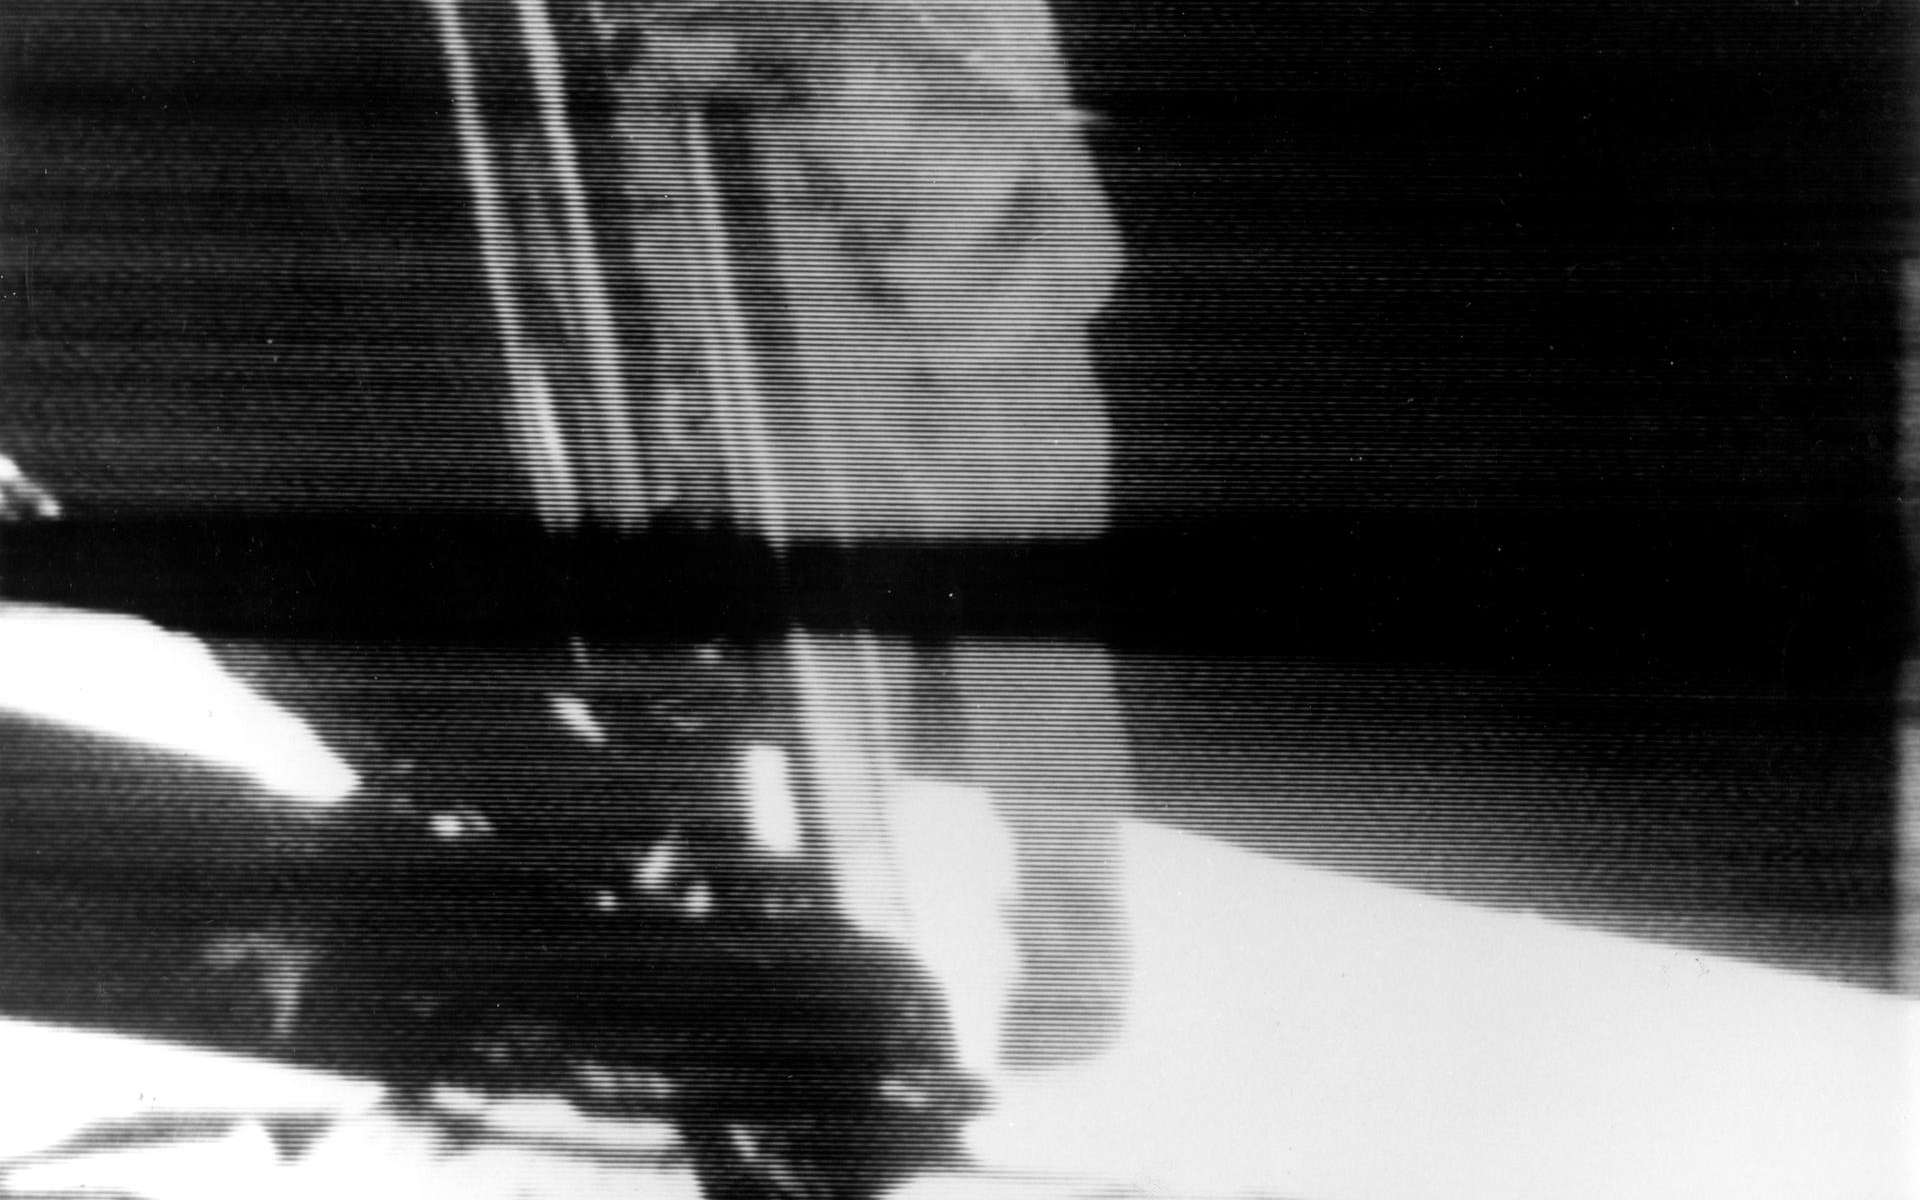 Apollo 11 : les premiers pas de Neil Armstrong sur la Lune il y a 52 ans en 4K !